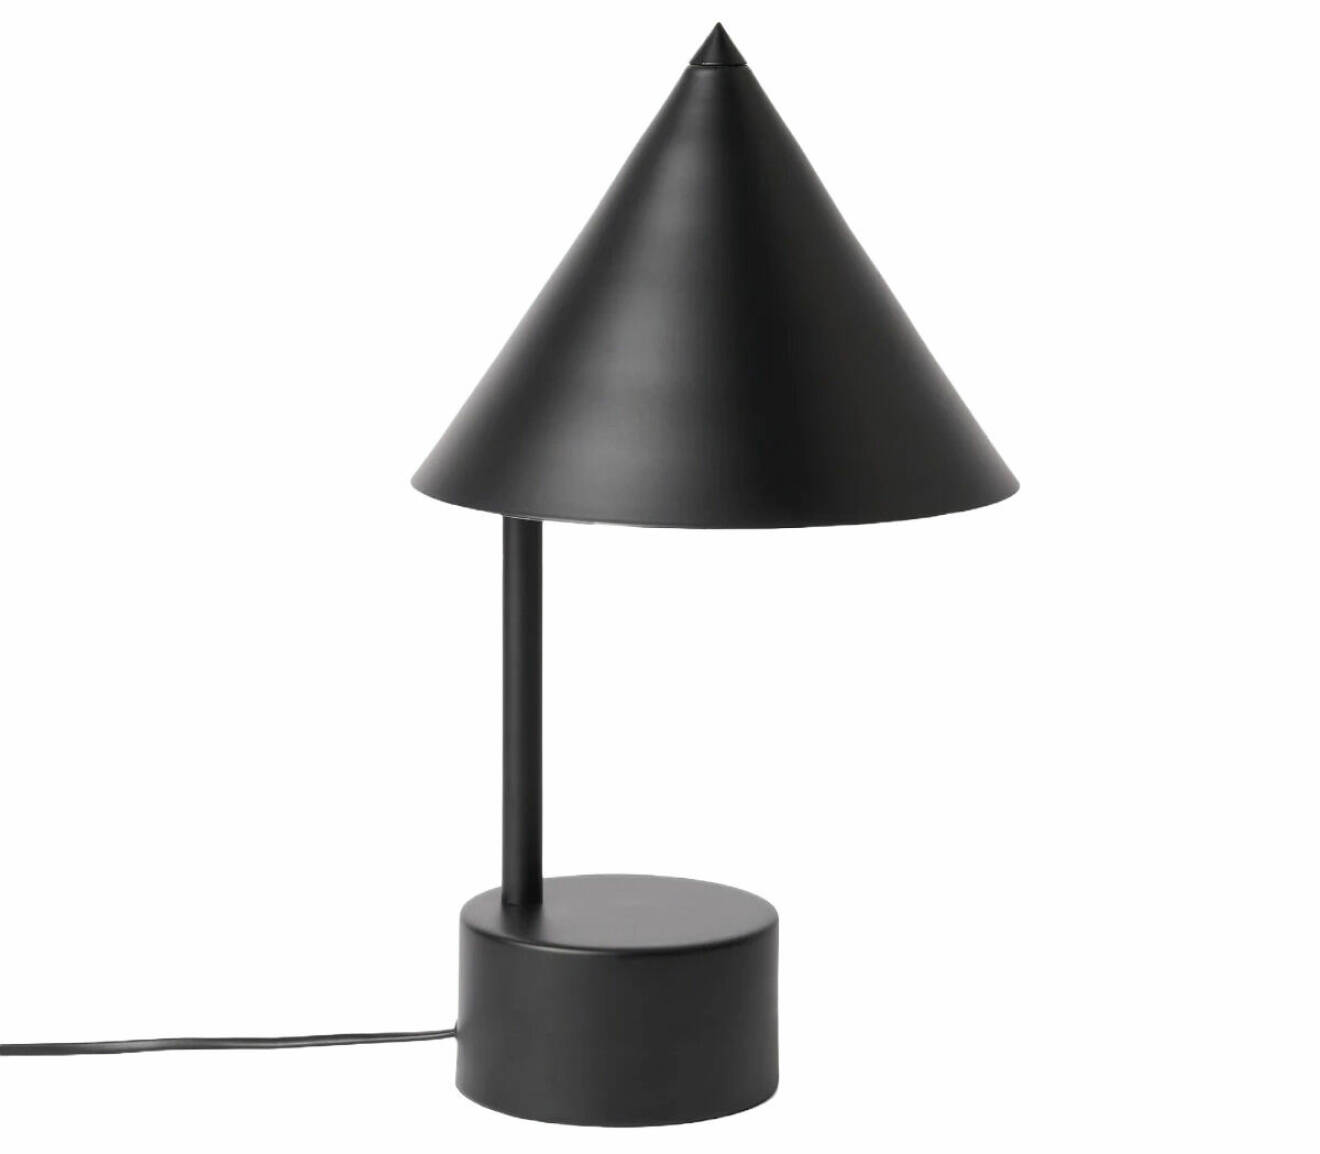 svart bordslampa med trekantig skärm från designtorget